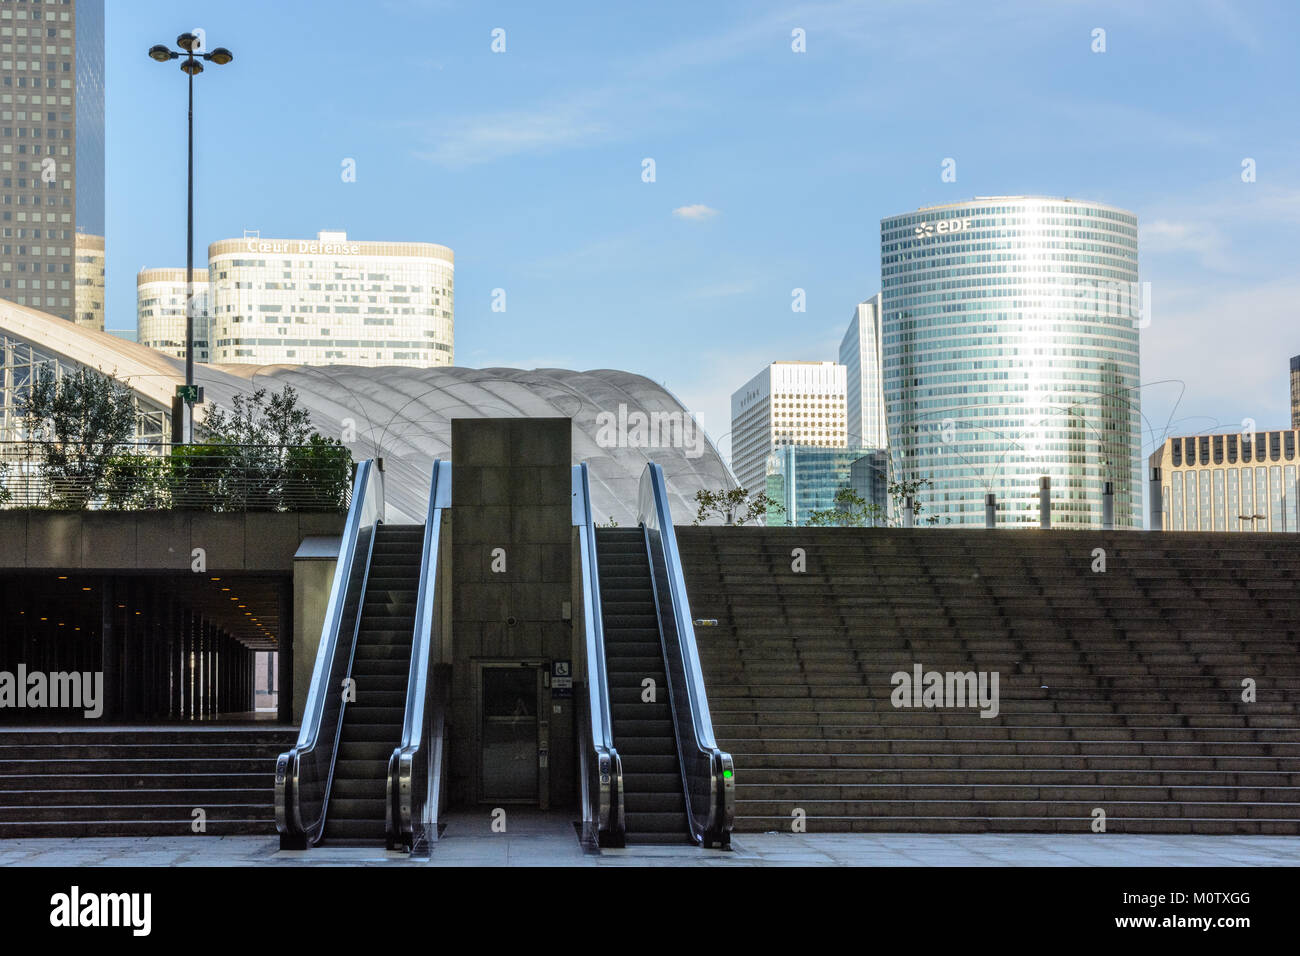 Escaliers mécaniques à Paris La Défense, quartier résidentiel et commercial avec le cnit shopping mall et tours de bureaux à l'arrière-plan. Banque D'Images